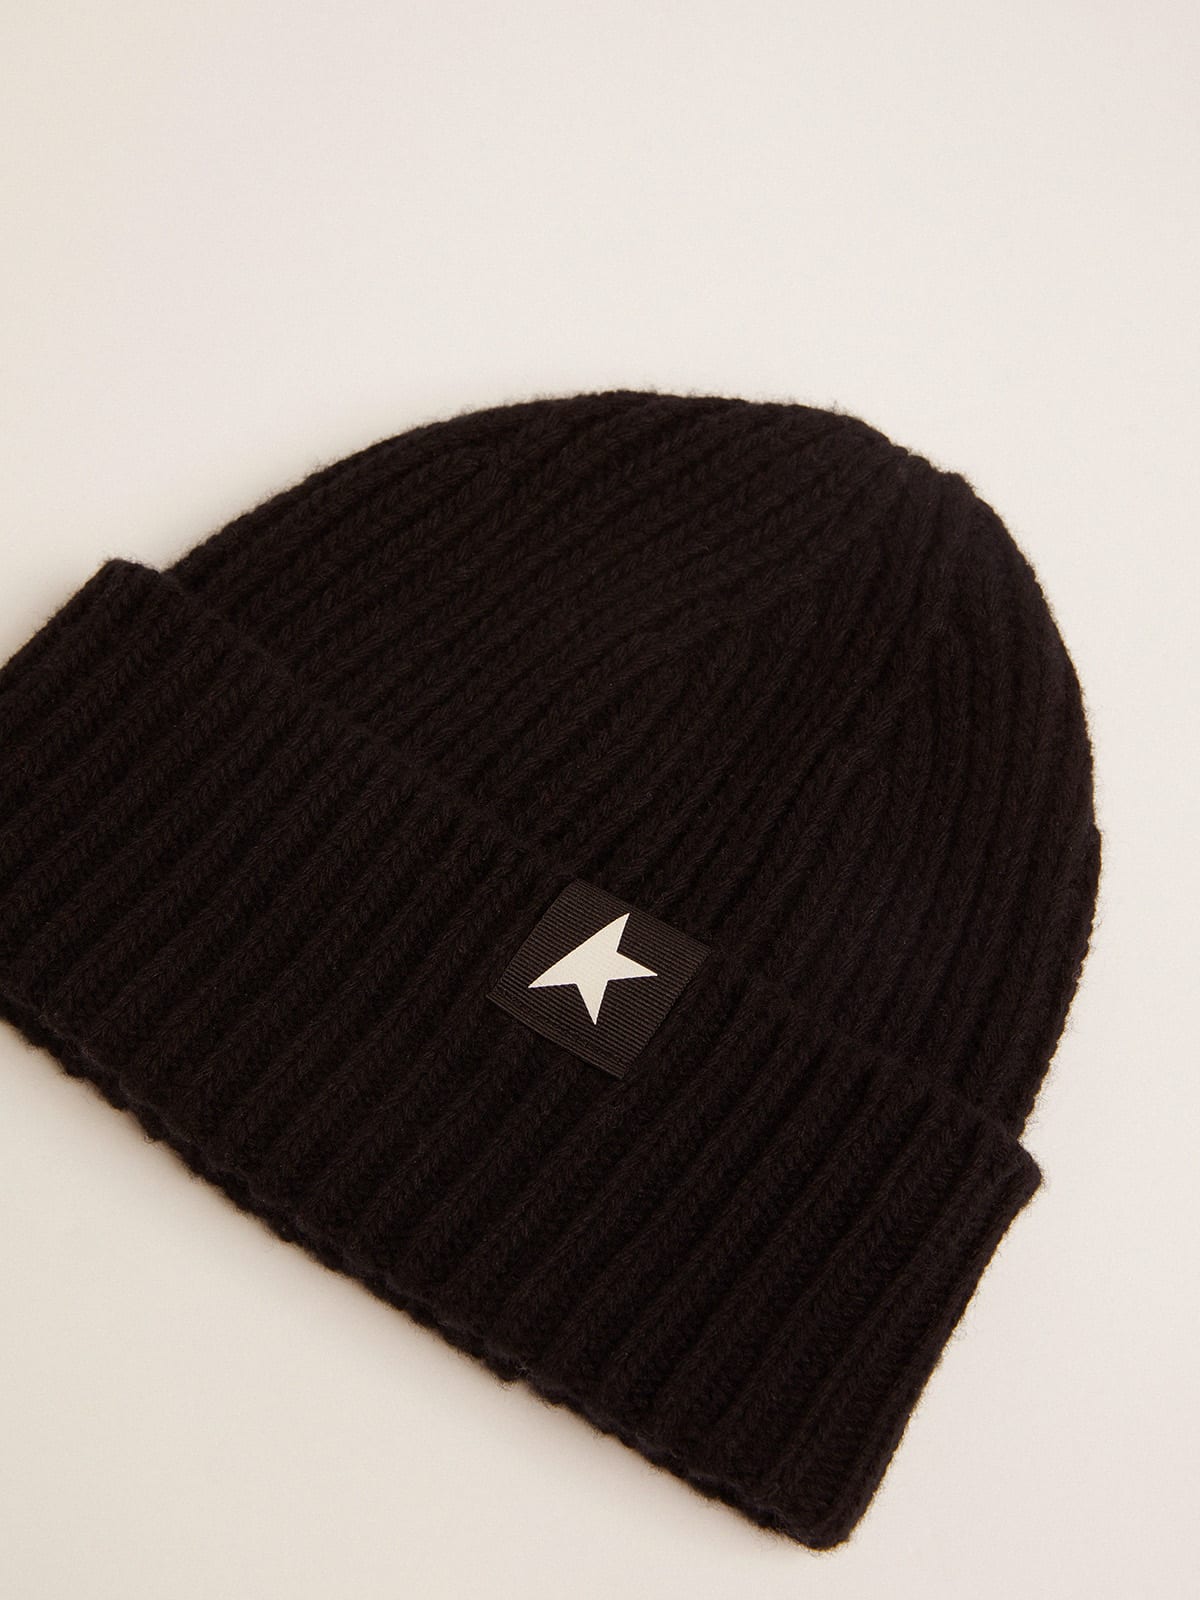 Golden Goose - Bonnet en laine de couleur noire avec étoile blanche contrastée in 